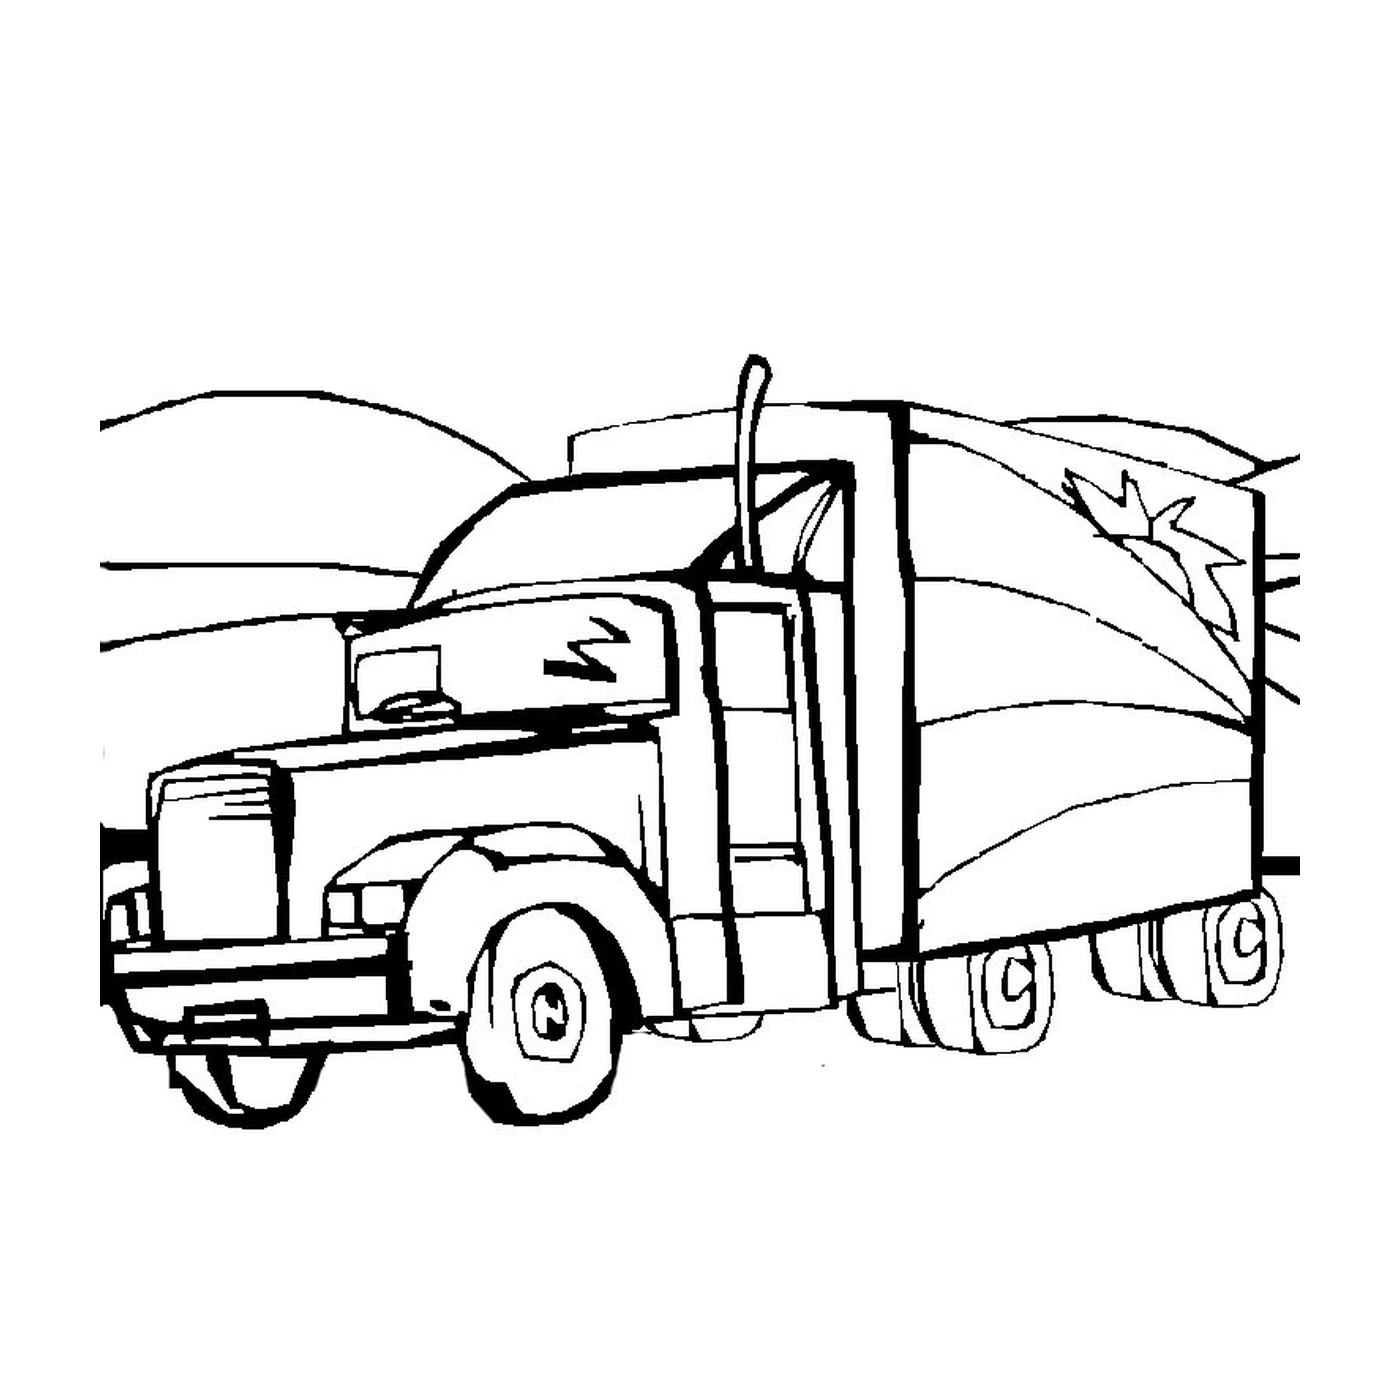  一辆拖车卡车 